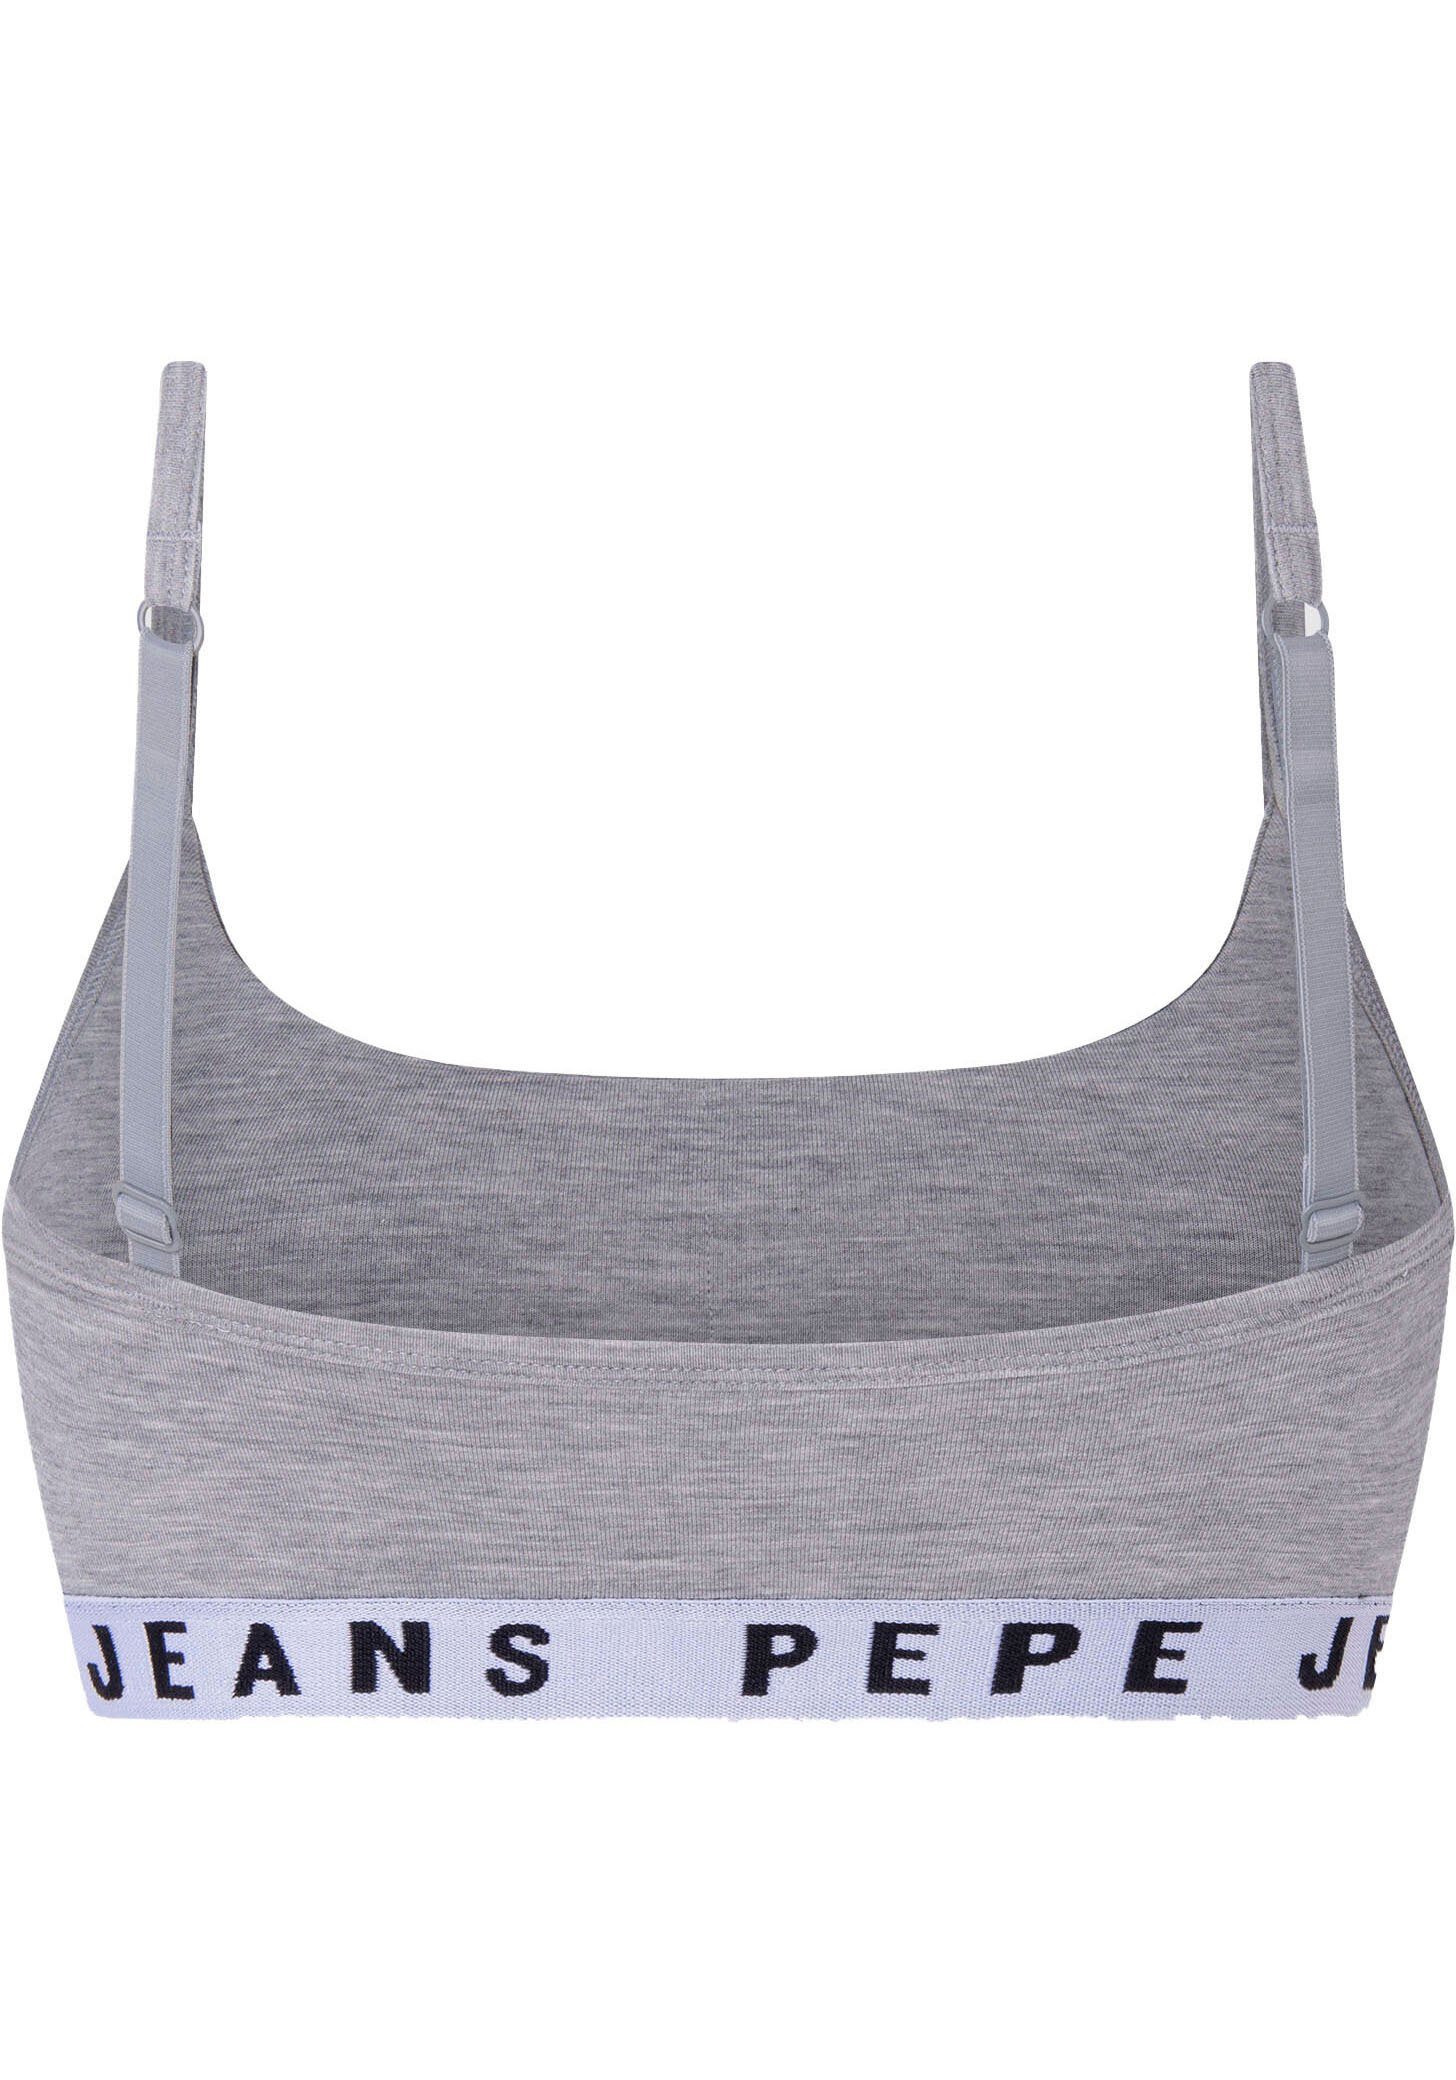 grau Bustier Pepe Jeans meliert Logo